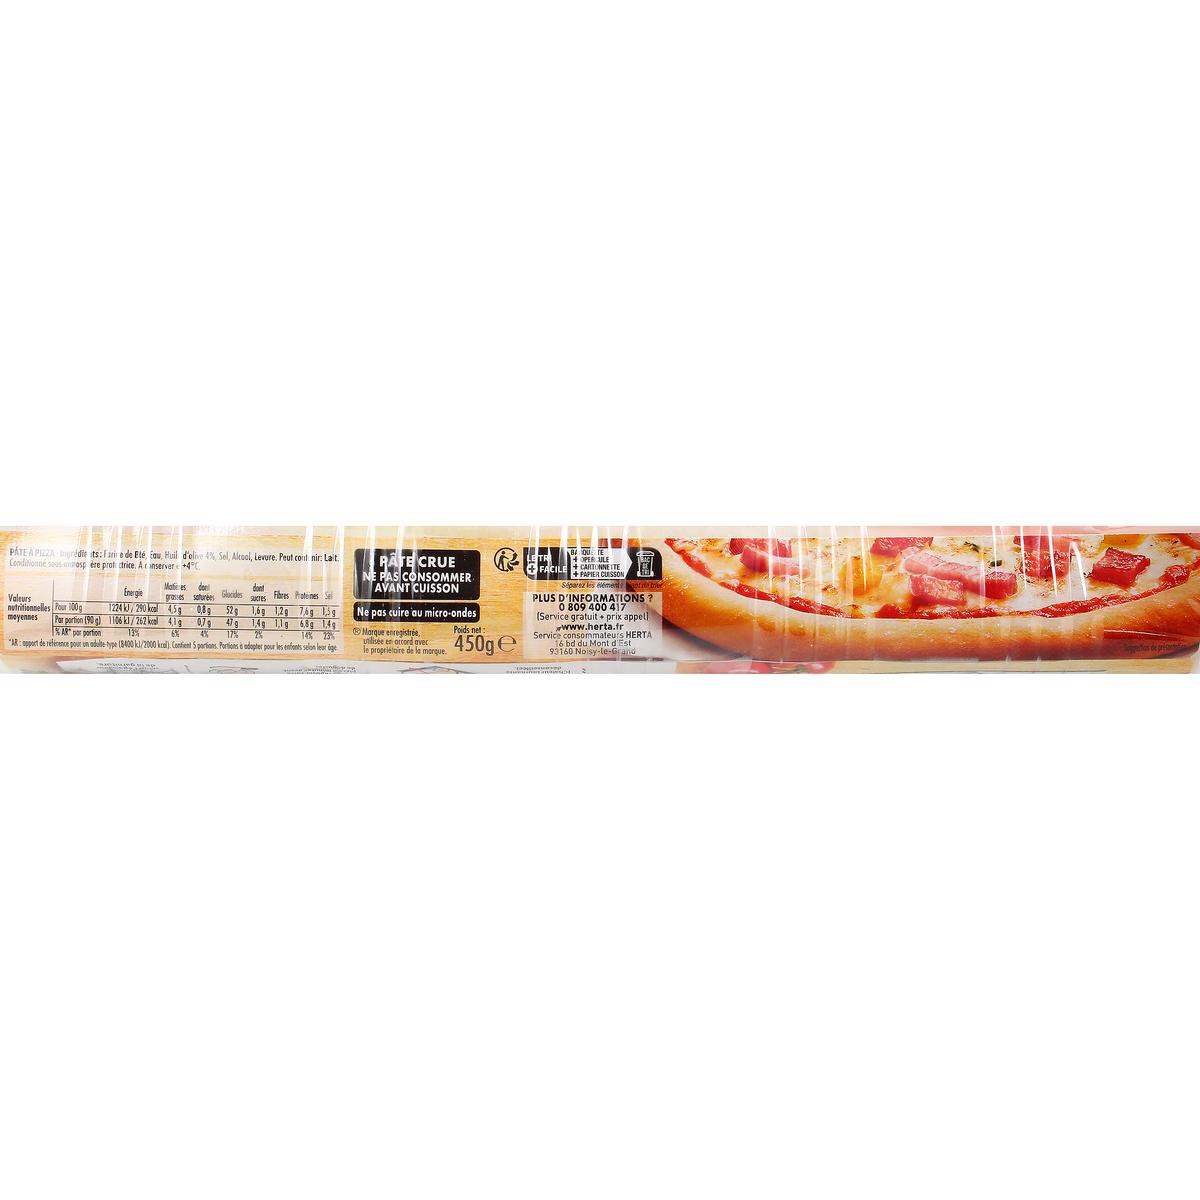 Pâte à pizza épaisse et ronde HERTA : le paquet de 375g à Prix